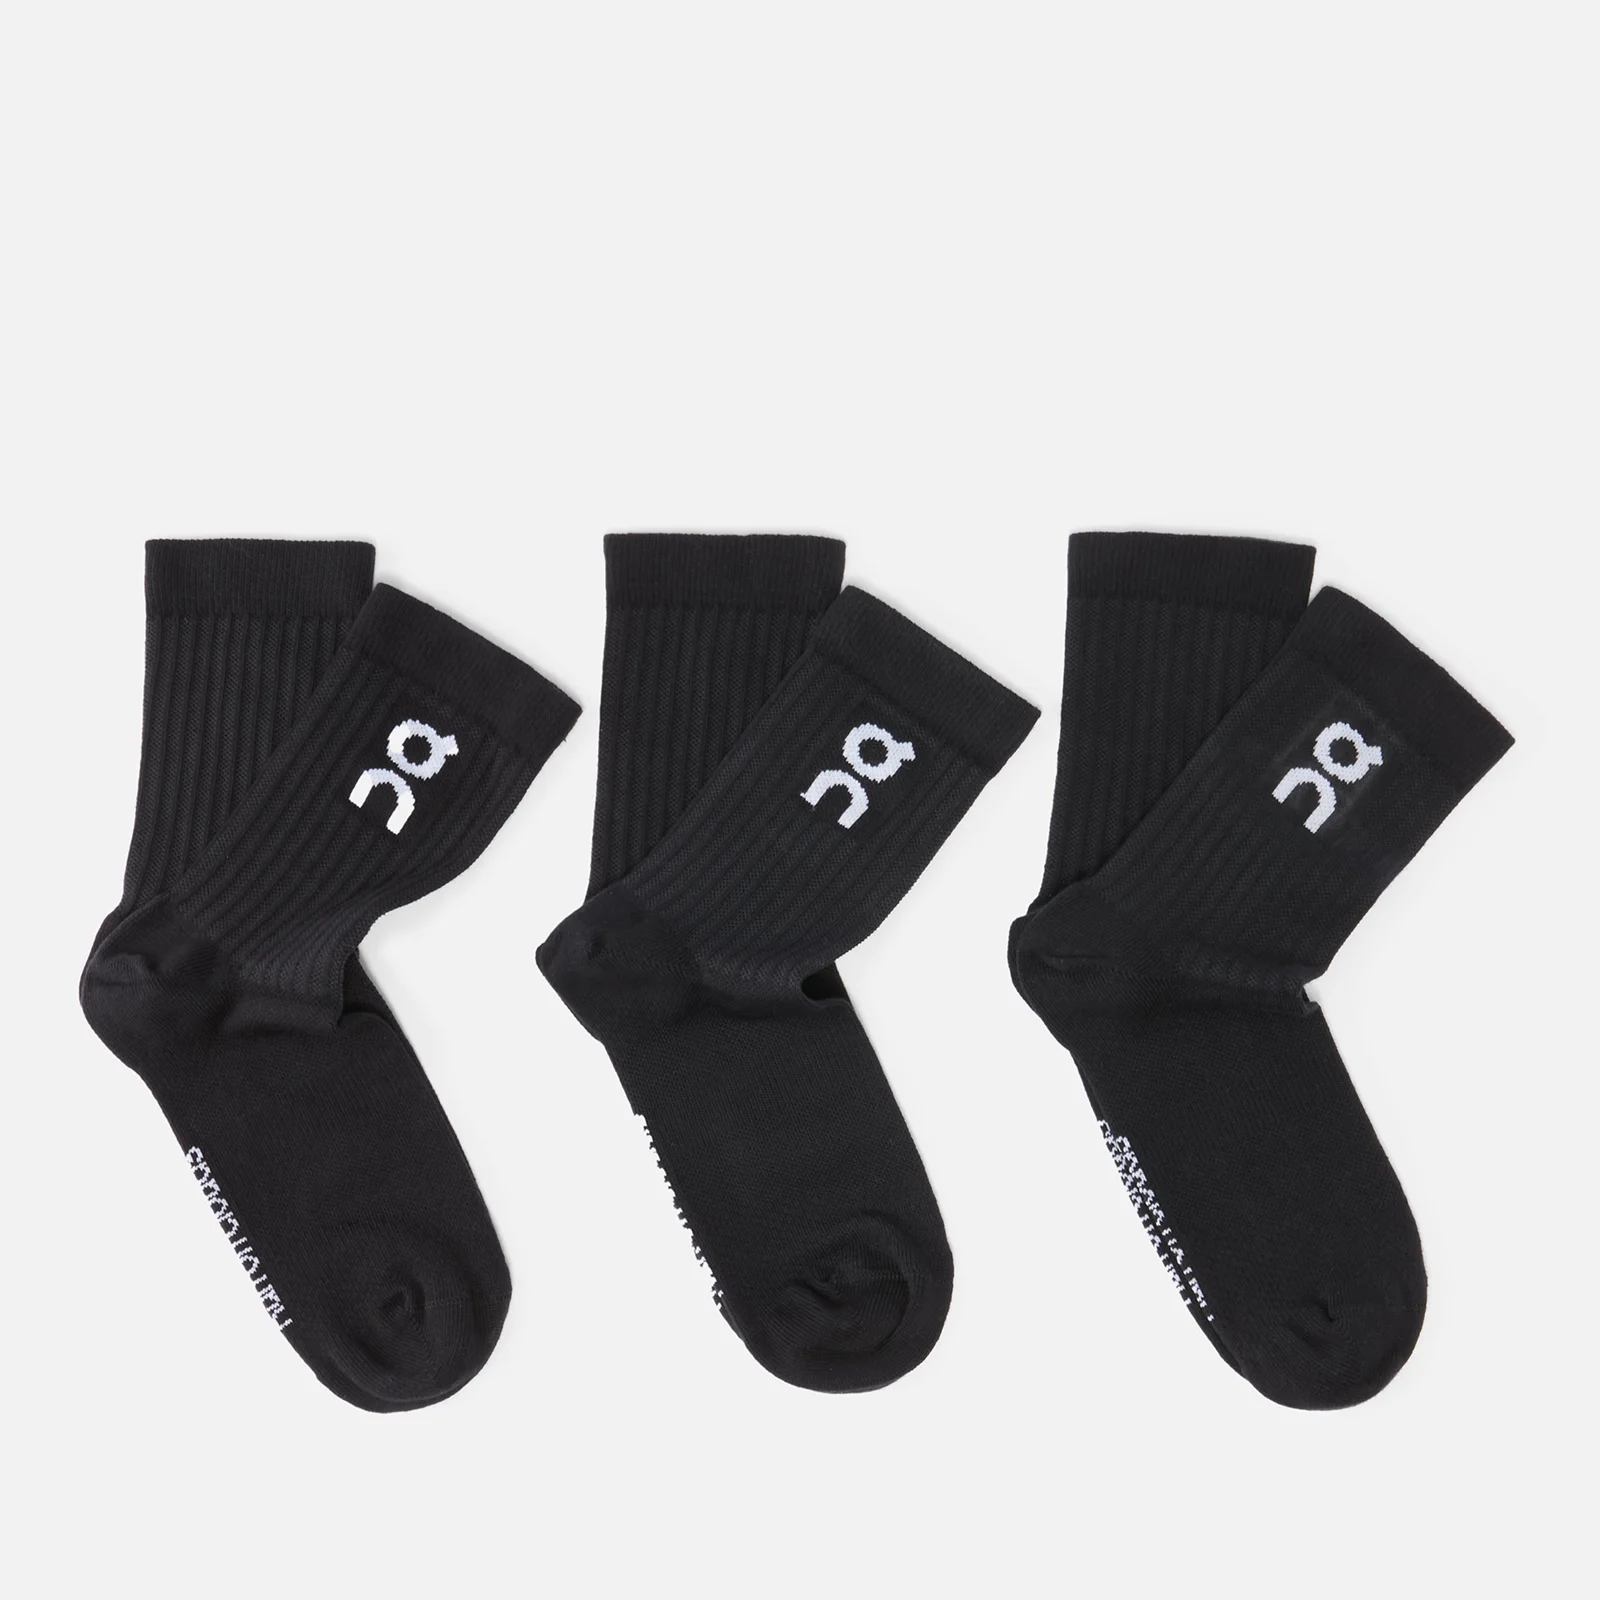 ON Men's 3-Pack Logo Socks - Black Image 1